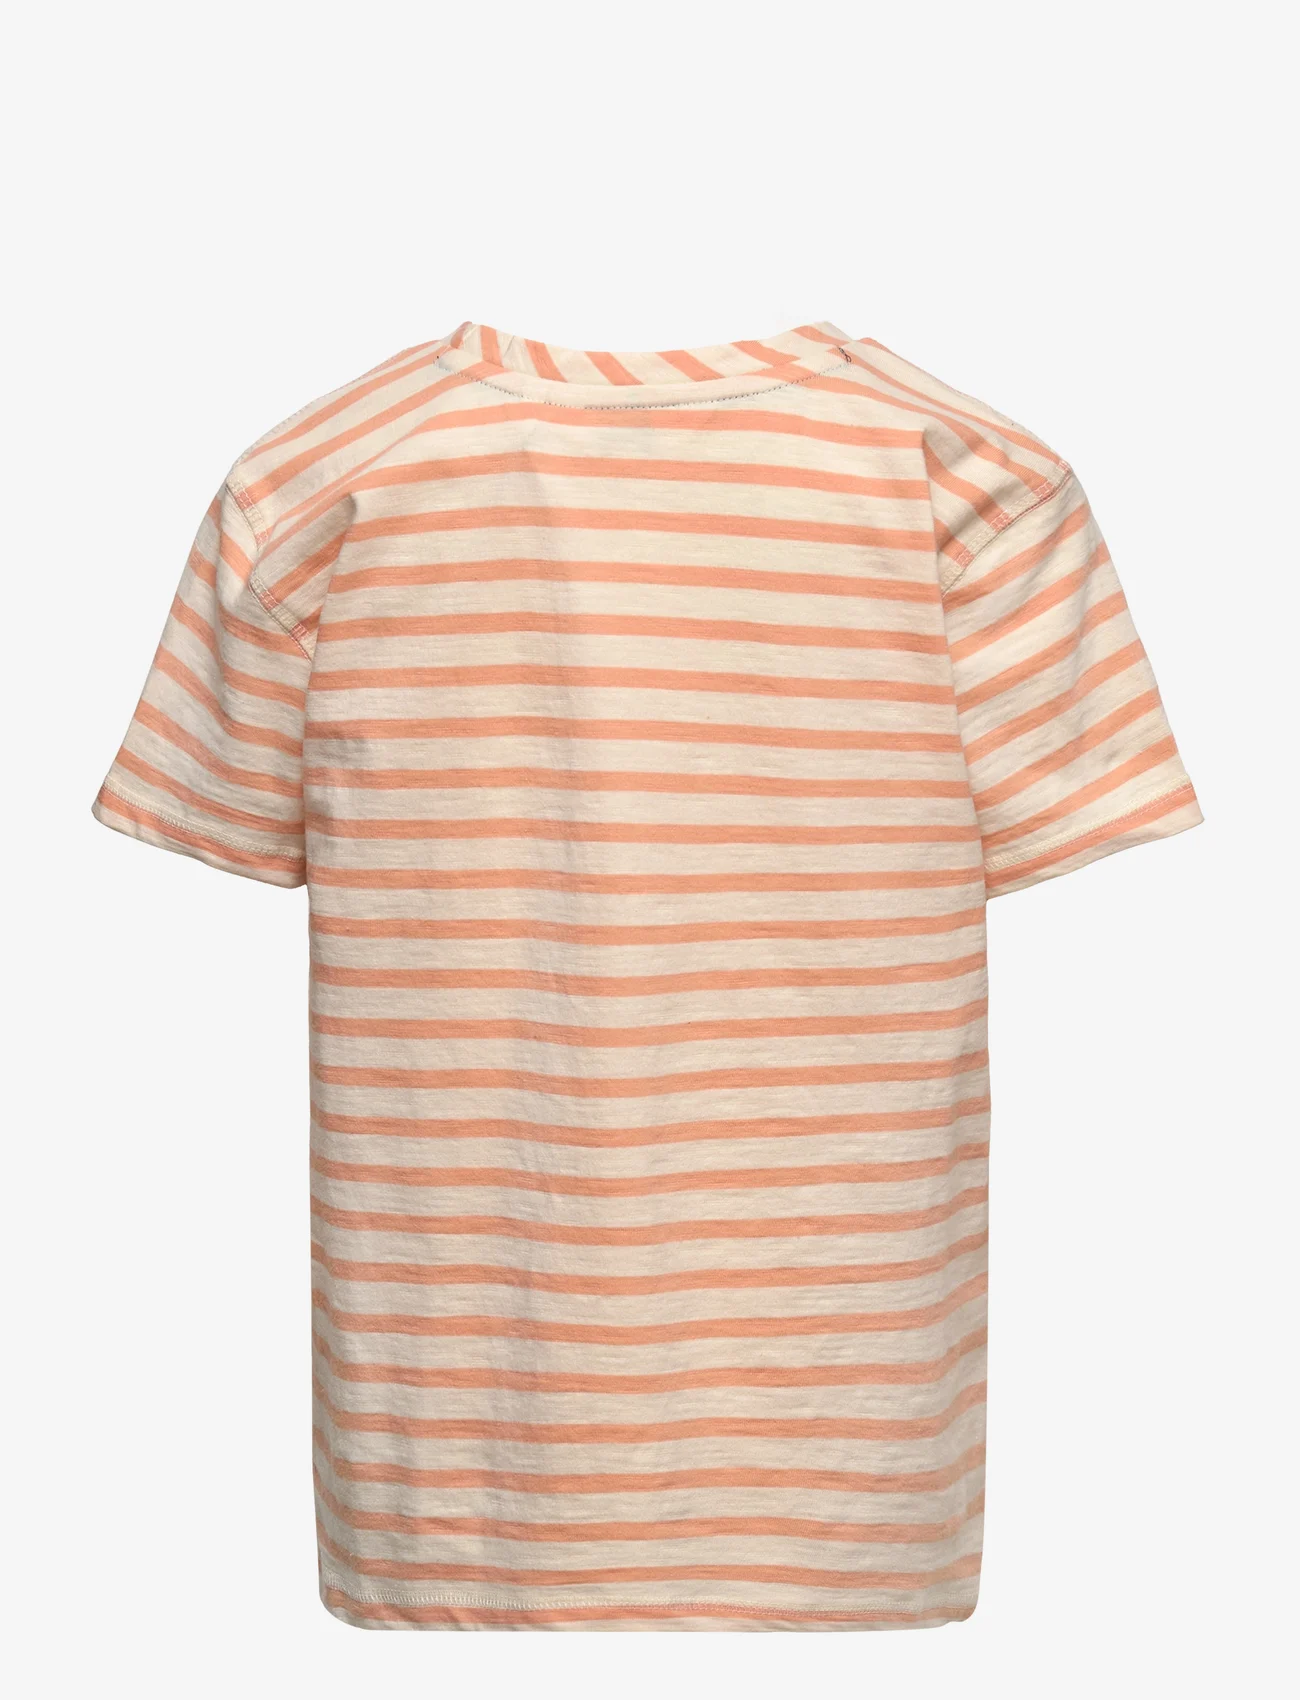 ebbe Kids - Steven t-shirt - short-sleeved - 0963 coral stripe - 1